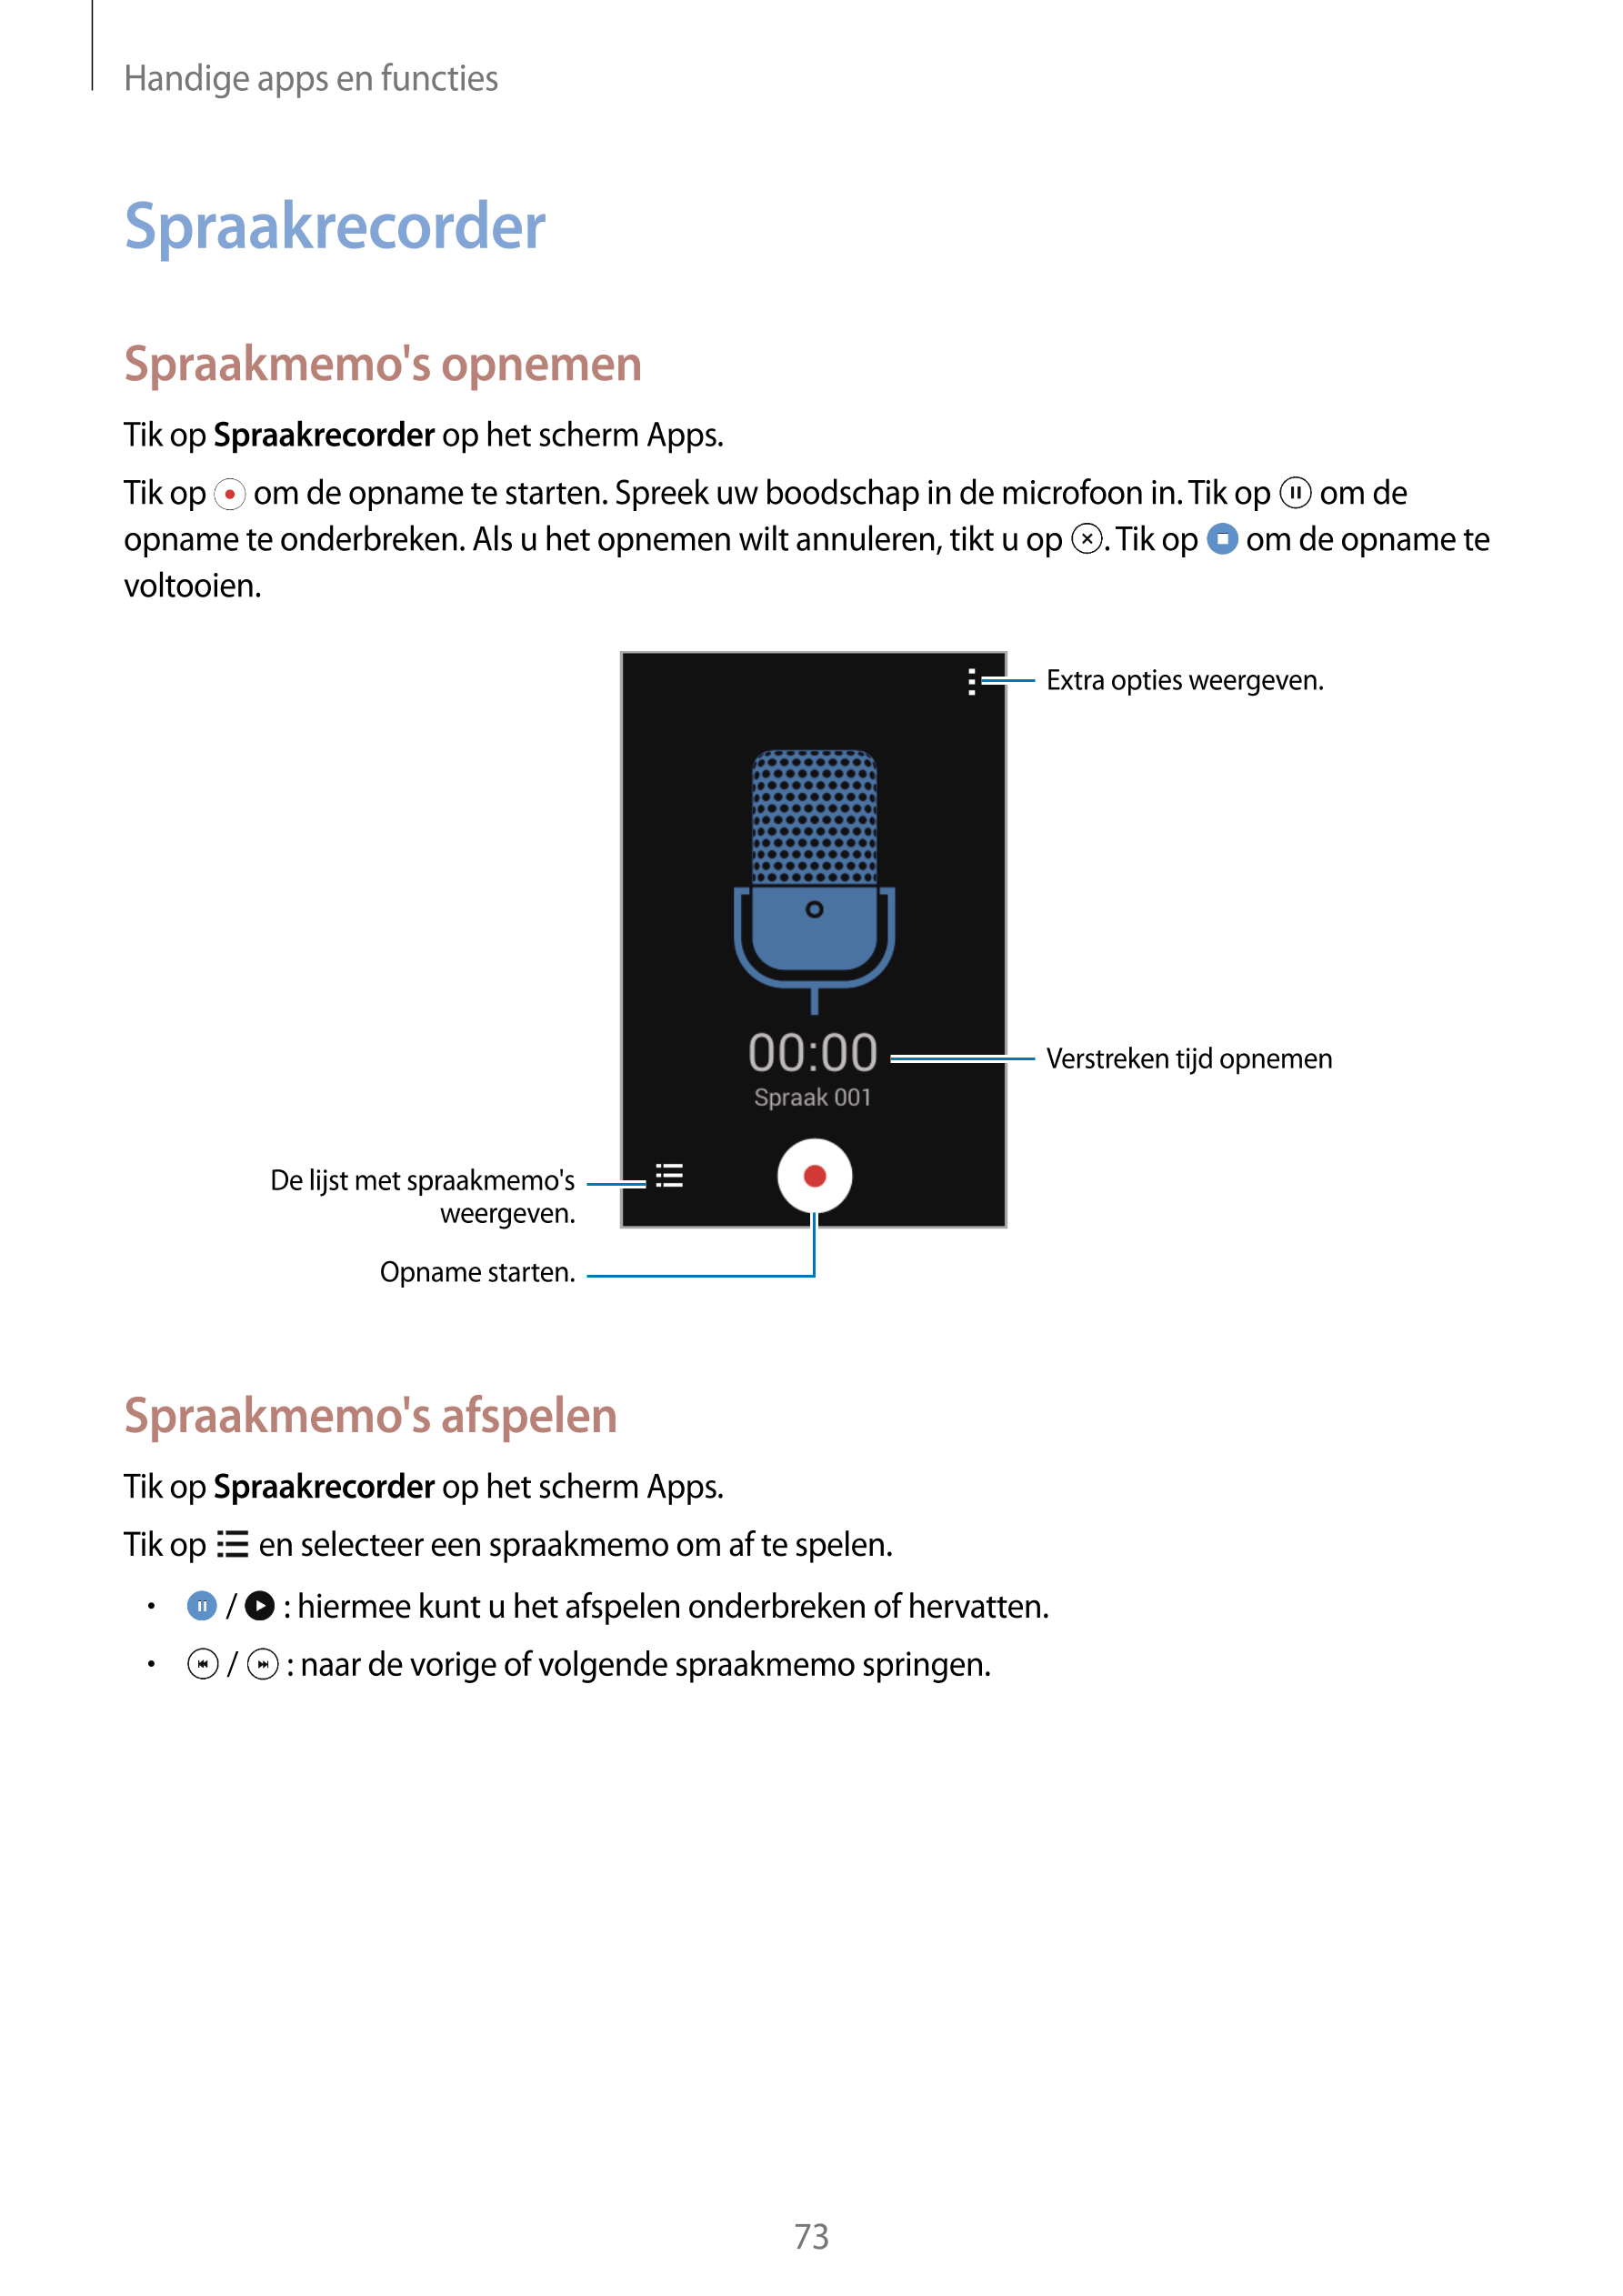 Handige apps en functies
Spraakrecorder
Spraakmemo's opnemen
Tik op  Spraakrecorder op het scherm Apps.
Tik op   om de opname te